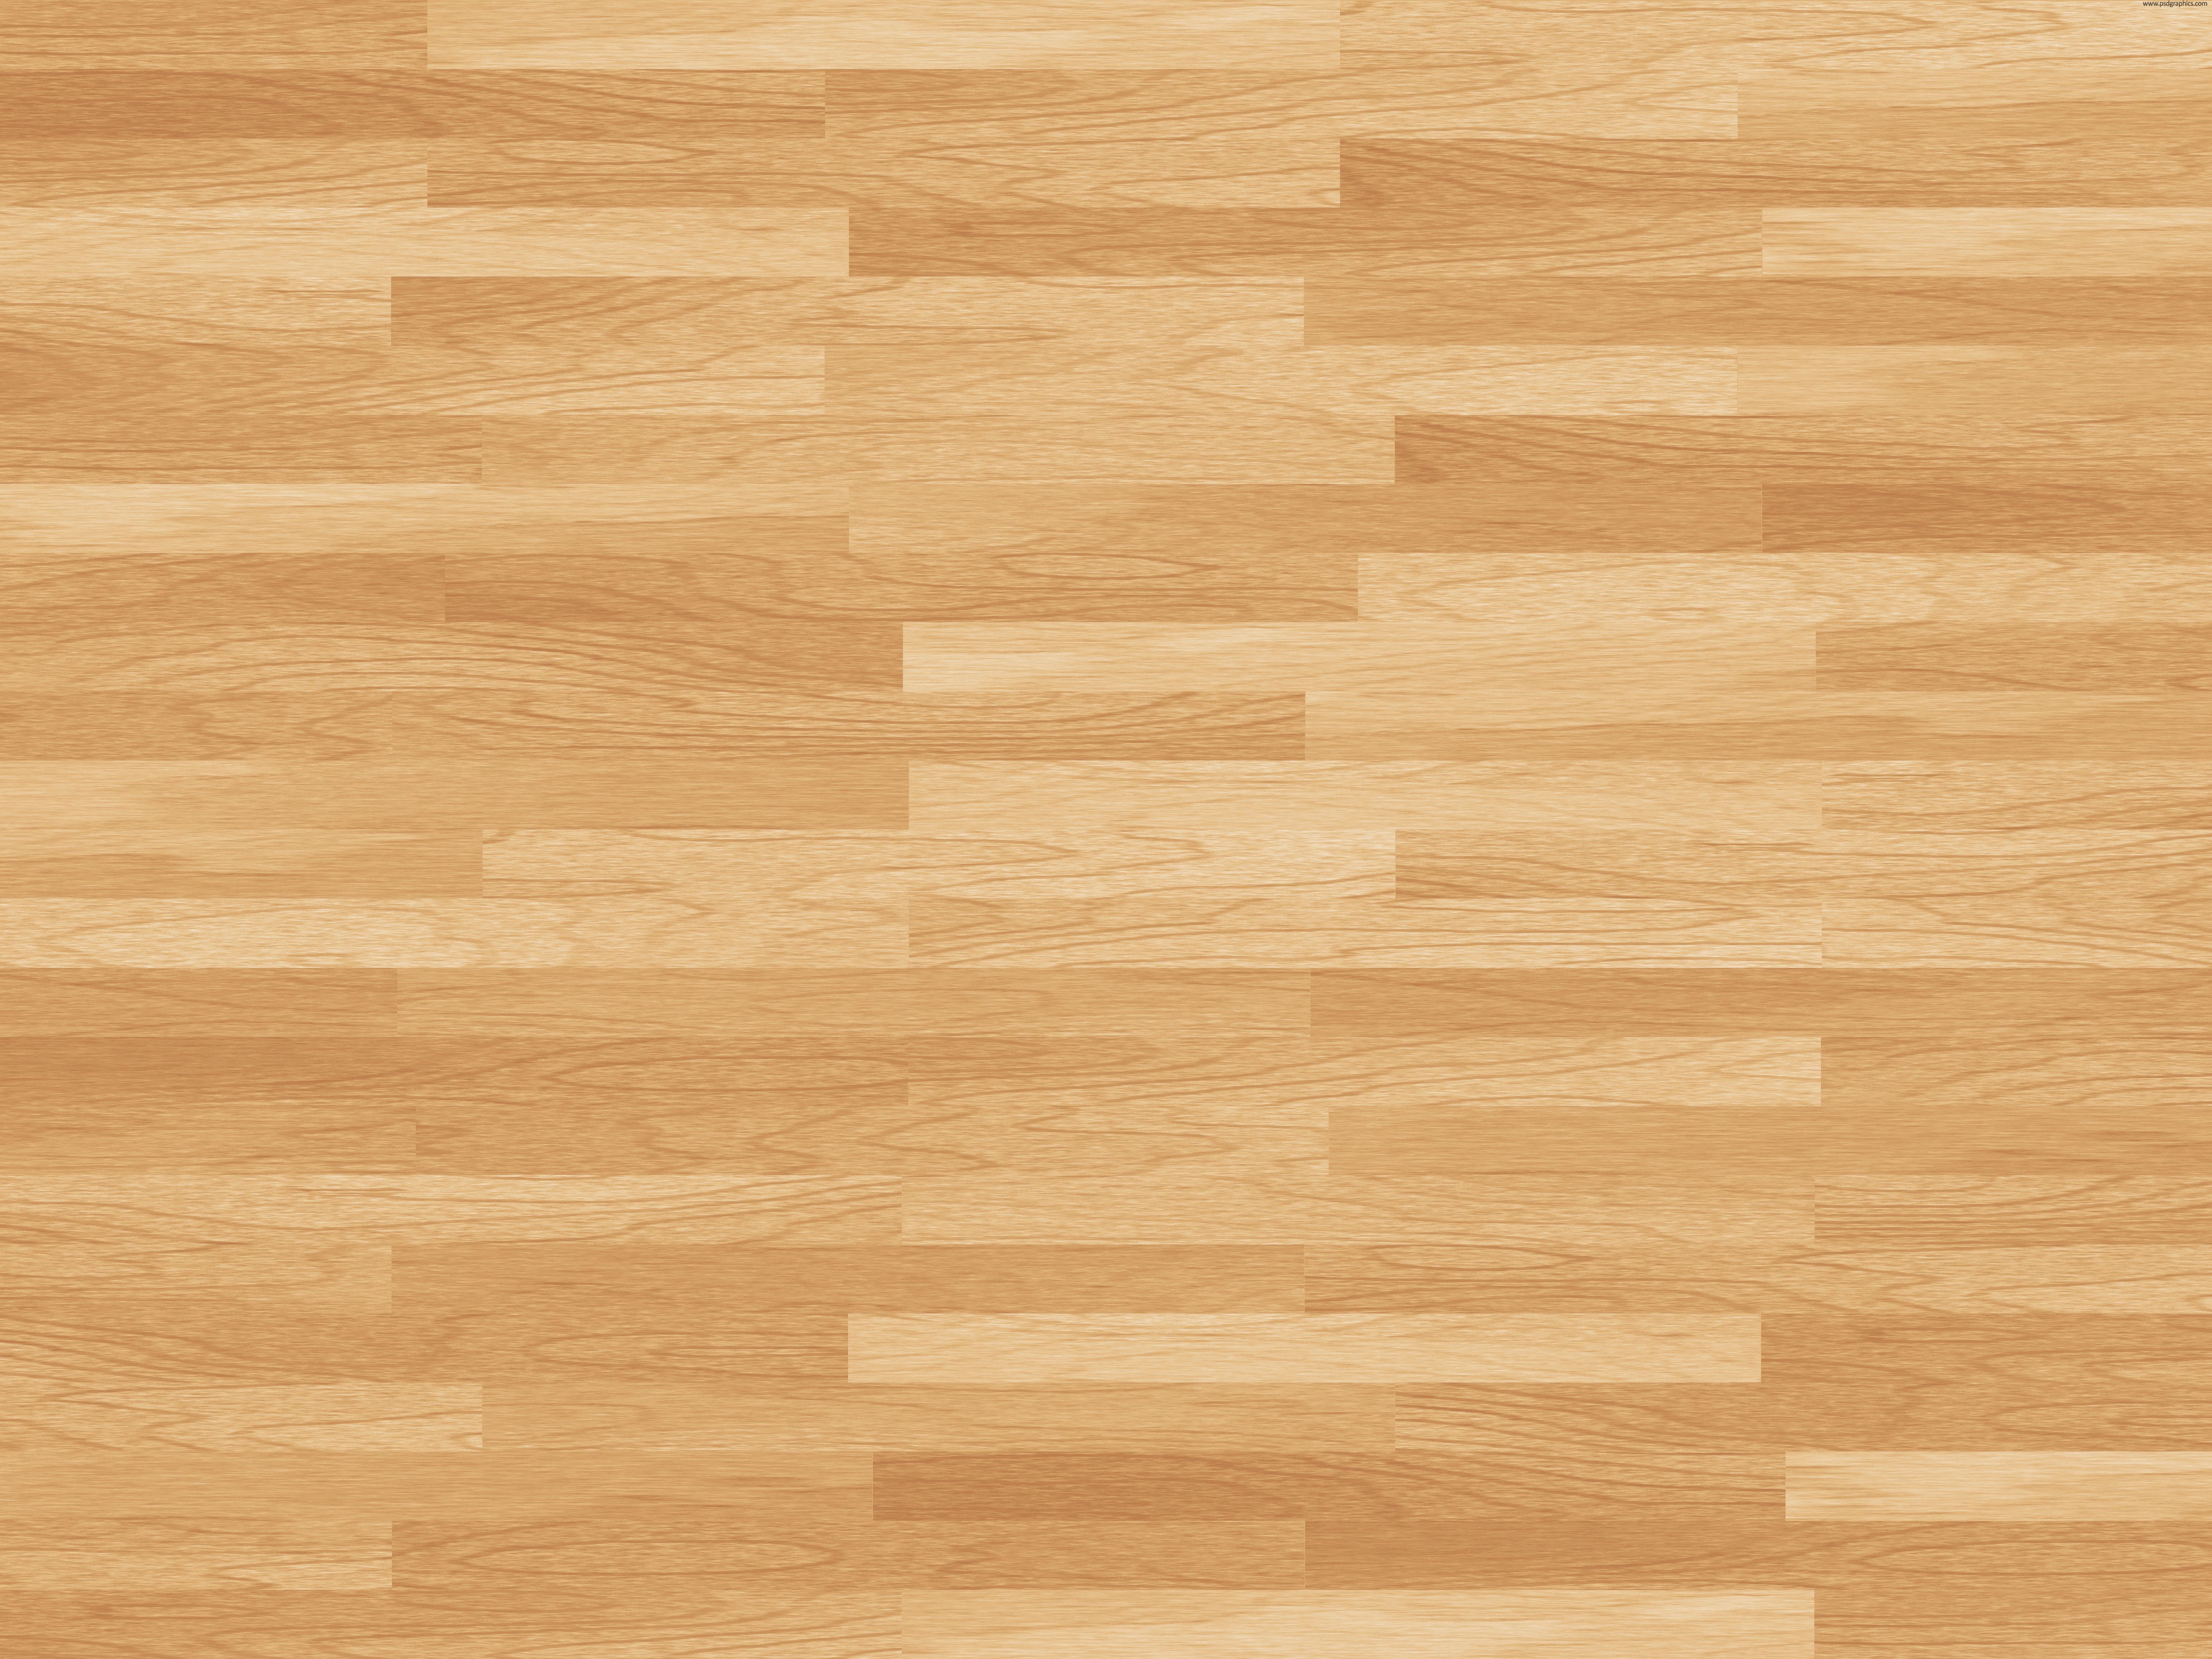 Free download wooden floor texture cherry wood texture dark wood texture wooden [5000x3750] for your Desktop, Mobile & Tablet. Explore Hardwood Floor Wallpaper. Wood Look Wallpaper for Walls, Wood